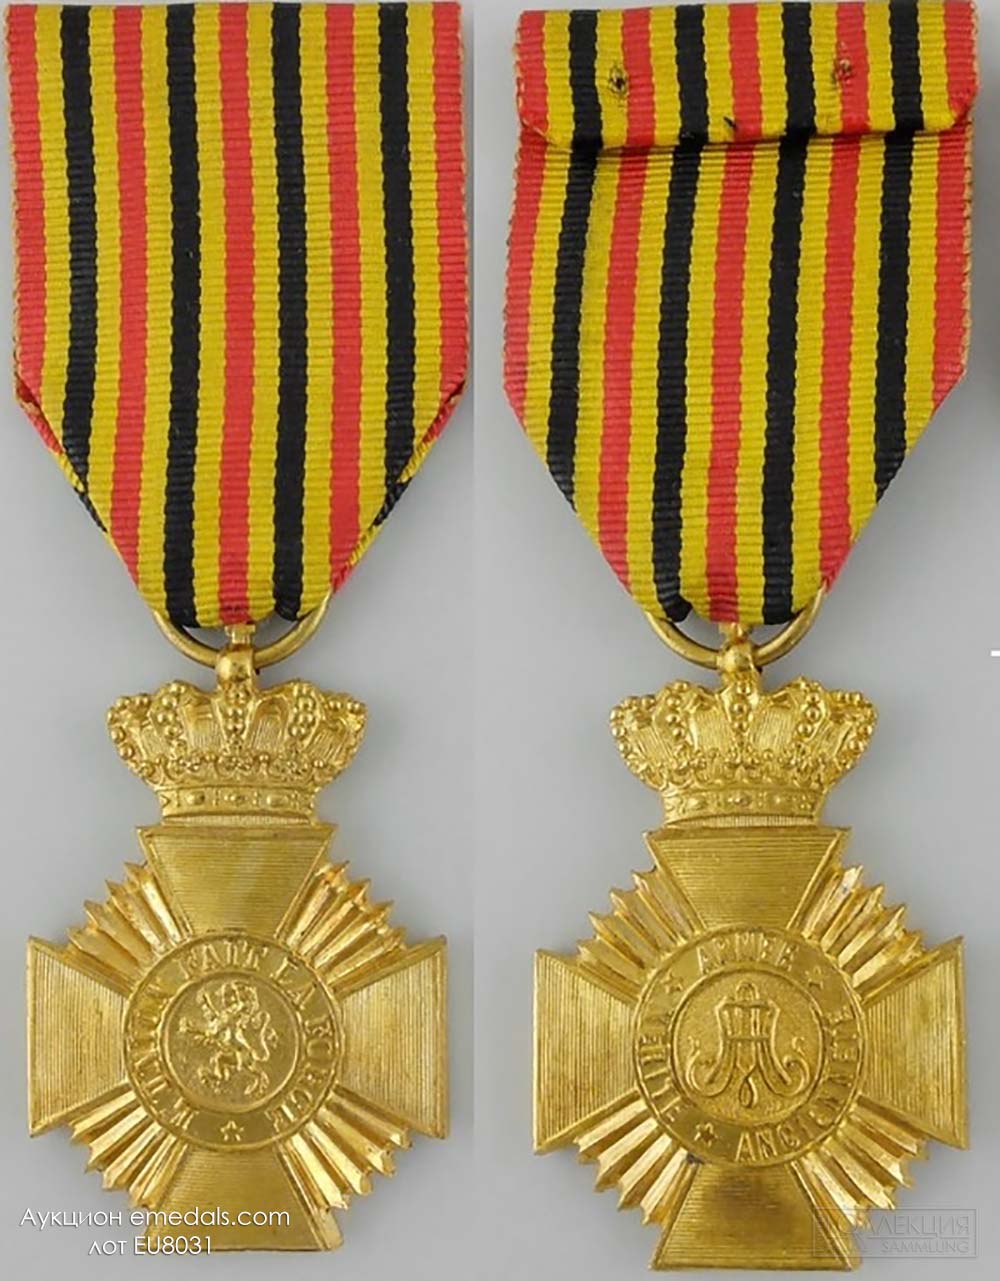 «Военная награда» 1-го класс 2-й степени с вензелем короля Альберта. Фото с аукциона emedals.com, лот EU8031